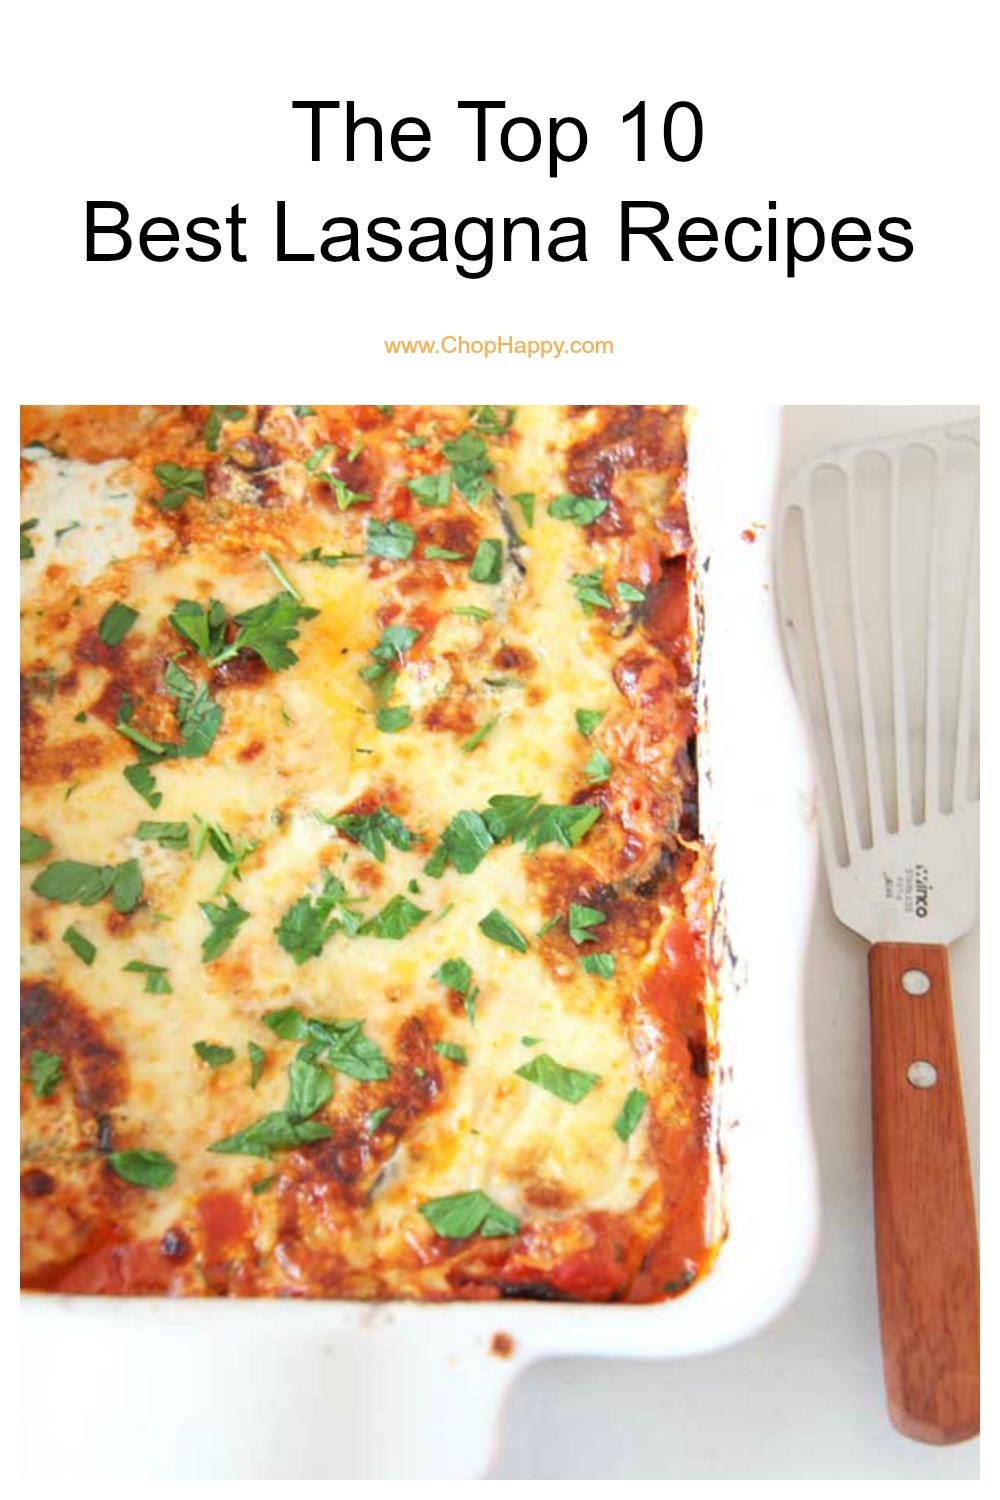 The Top 10 Best Lasagna Recipes. low cooker lasagna, eggplant Parmesan lasagna, ravioli lasagna and more easy recipes. perfect for a pot luck or family dinner. Happy Cooking! www.ChopHappy.com #lasagna #Italianrecipes 